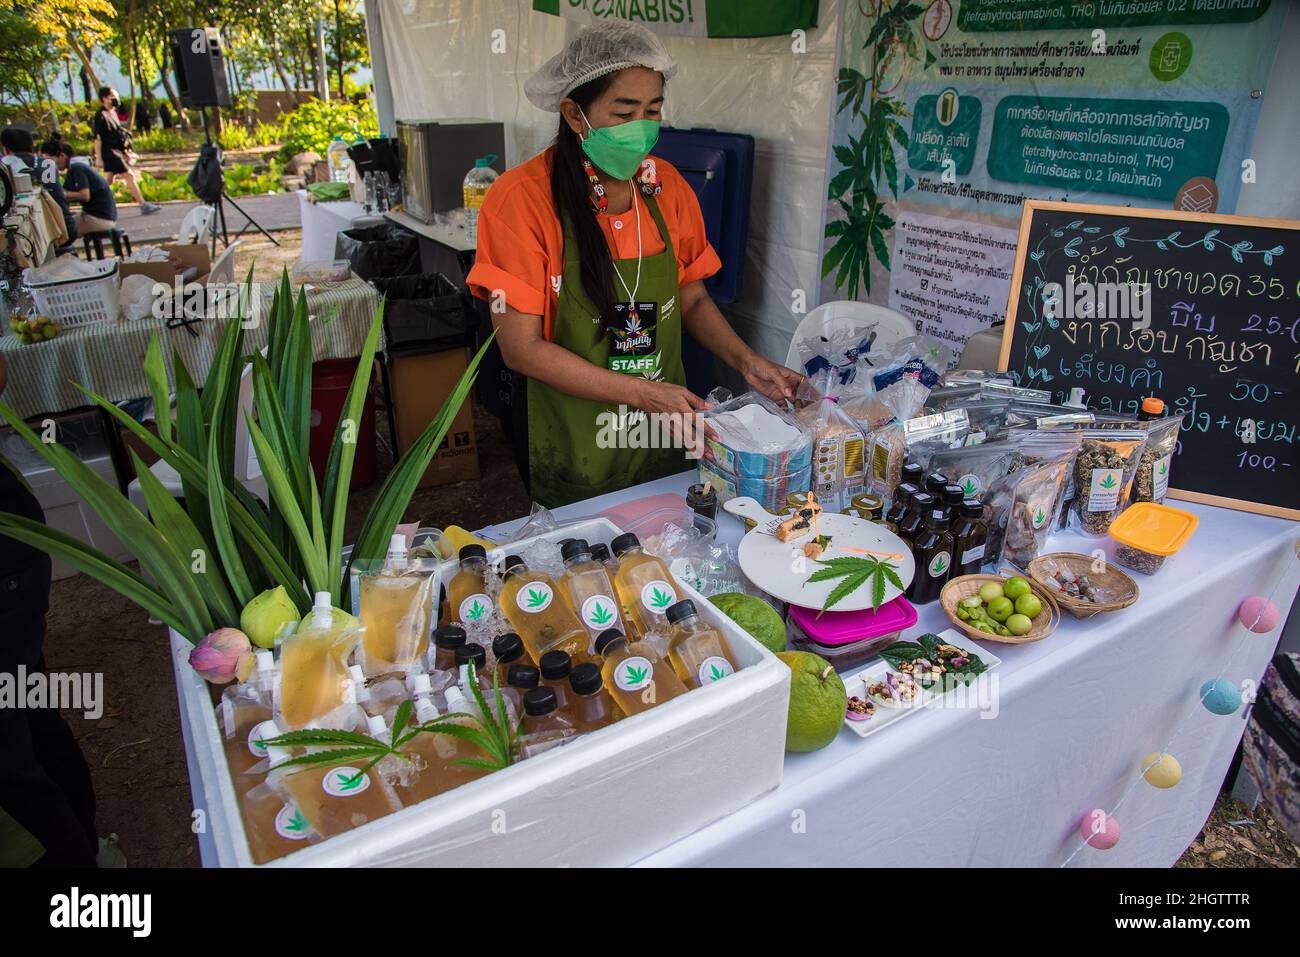 Eine Cannabis-Produktverkäuferin, die während der 'Makinkan Cannabis Food Fair' im 100th-jährigen Park der Chulalongkorn Universität in Bangkok in ihrem Geschäft gesehen wurde.die 'Makinkan Cannabis Food Fair' wird vom 21-23. Januar 2022 an von der thailändischen Tourismusbehörde im 100th-jährigen Park der Chulalongkorn Universität in Bangkok veranstaltet. Thailand soll den Konsum von Cannabis produzierenden Lebensmitteln fördern, nachdem der Drogenkontrollausschuss des thailändischen Gesundheitsministeriums am Januar die Entfernung von Cannabis von der Liste der Betäubungsmittel genehmigt hat, um den Haushalten den Weg für den legalen Anbau von Cannabis zu ebnen Stockfoto